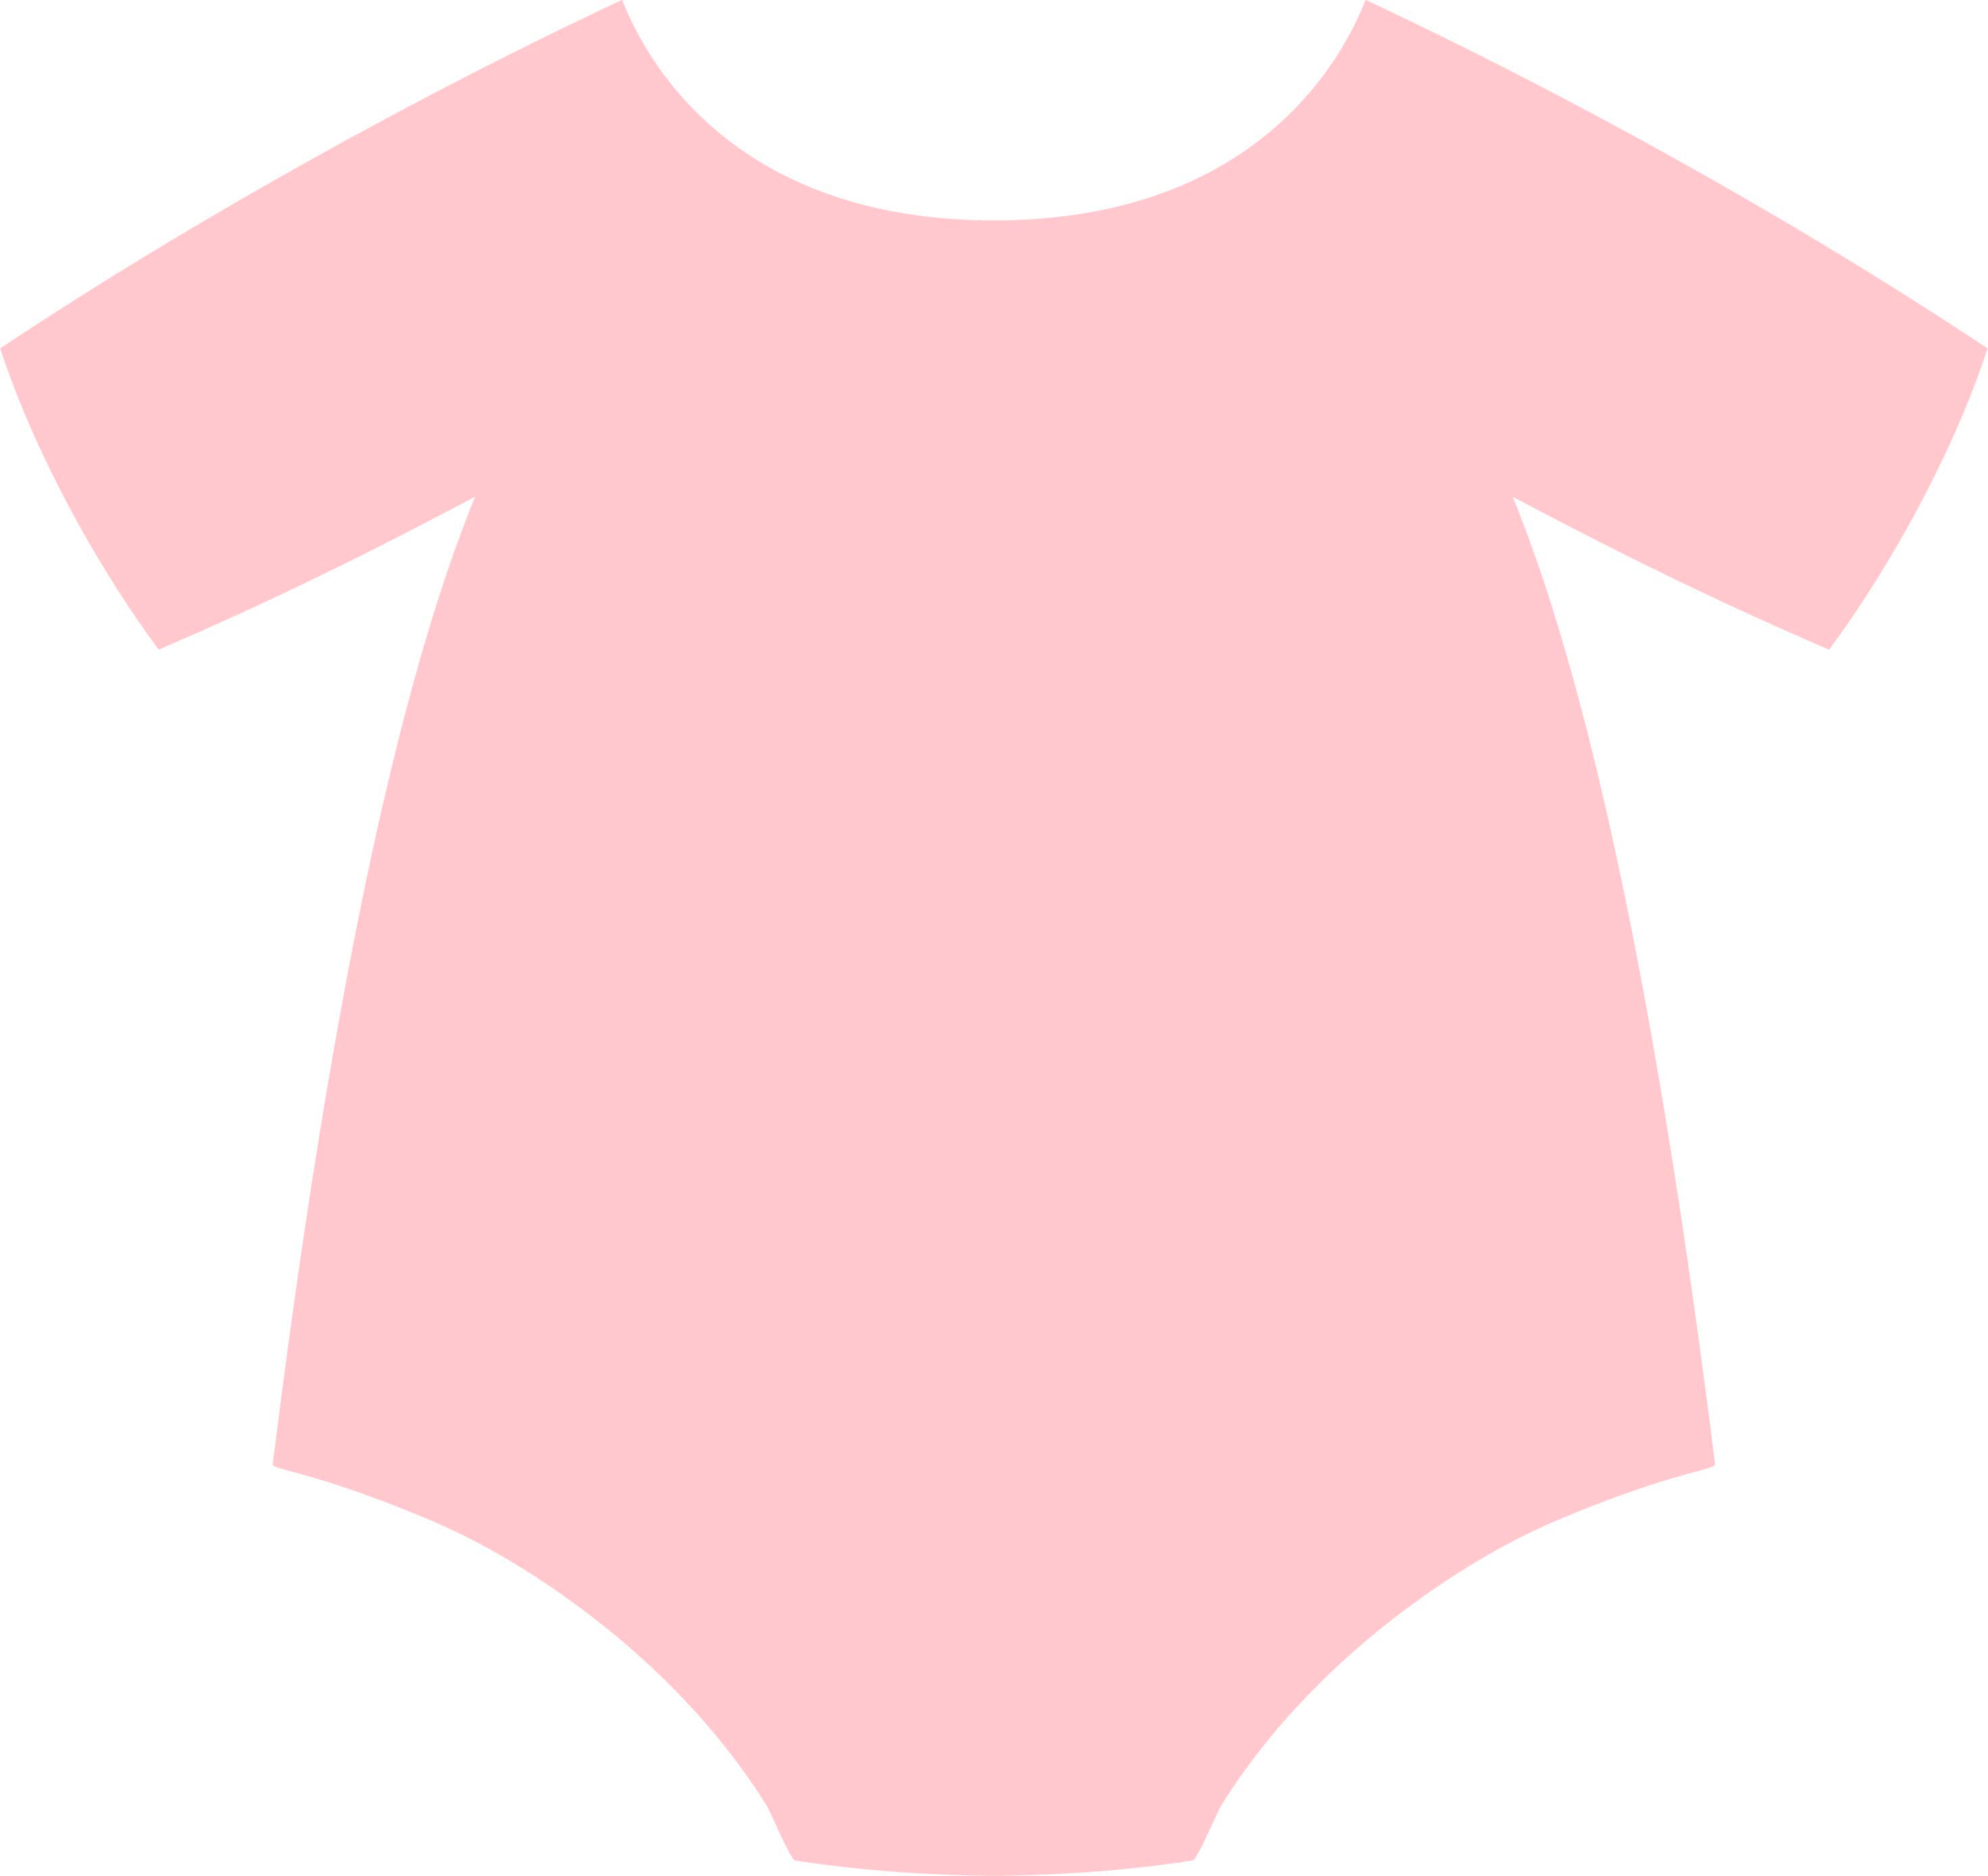 Baby Onesie Svg Baby Shower Onsie Pink And Blue Onsie Svg Etsy